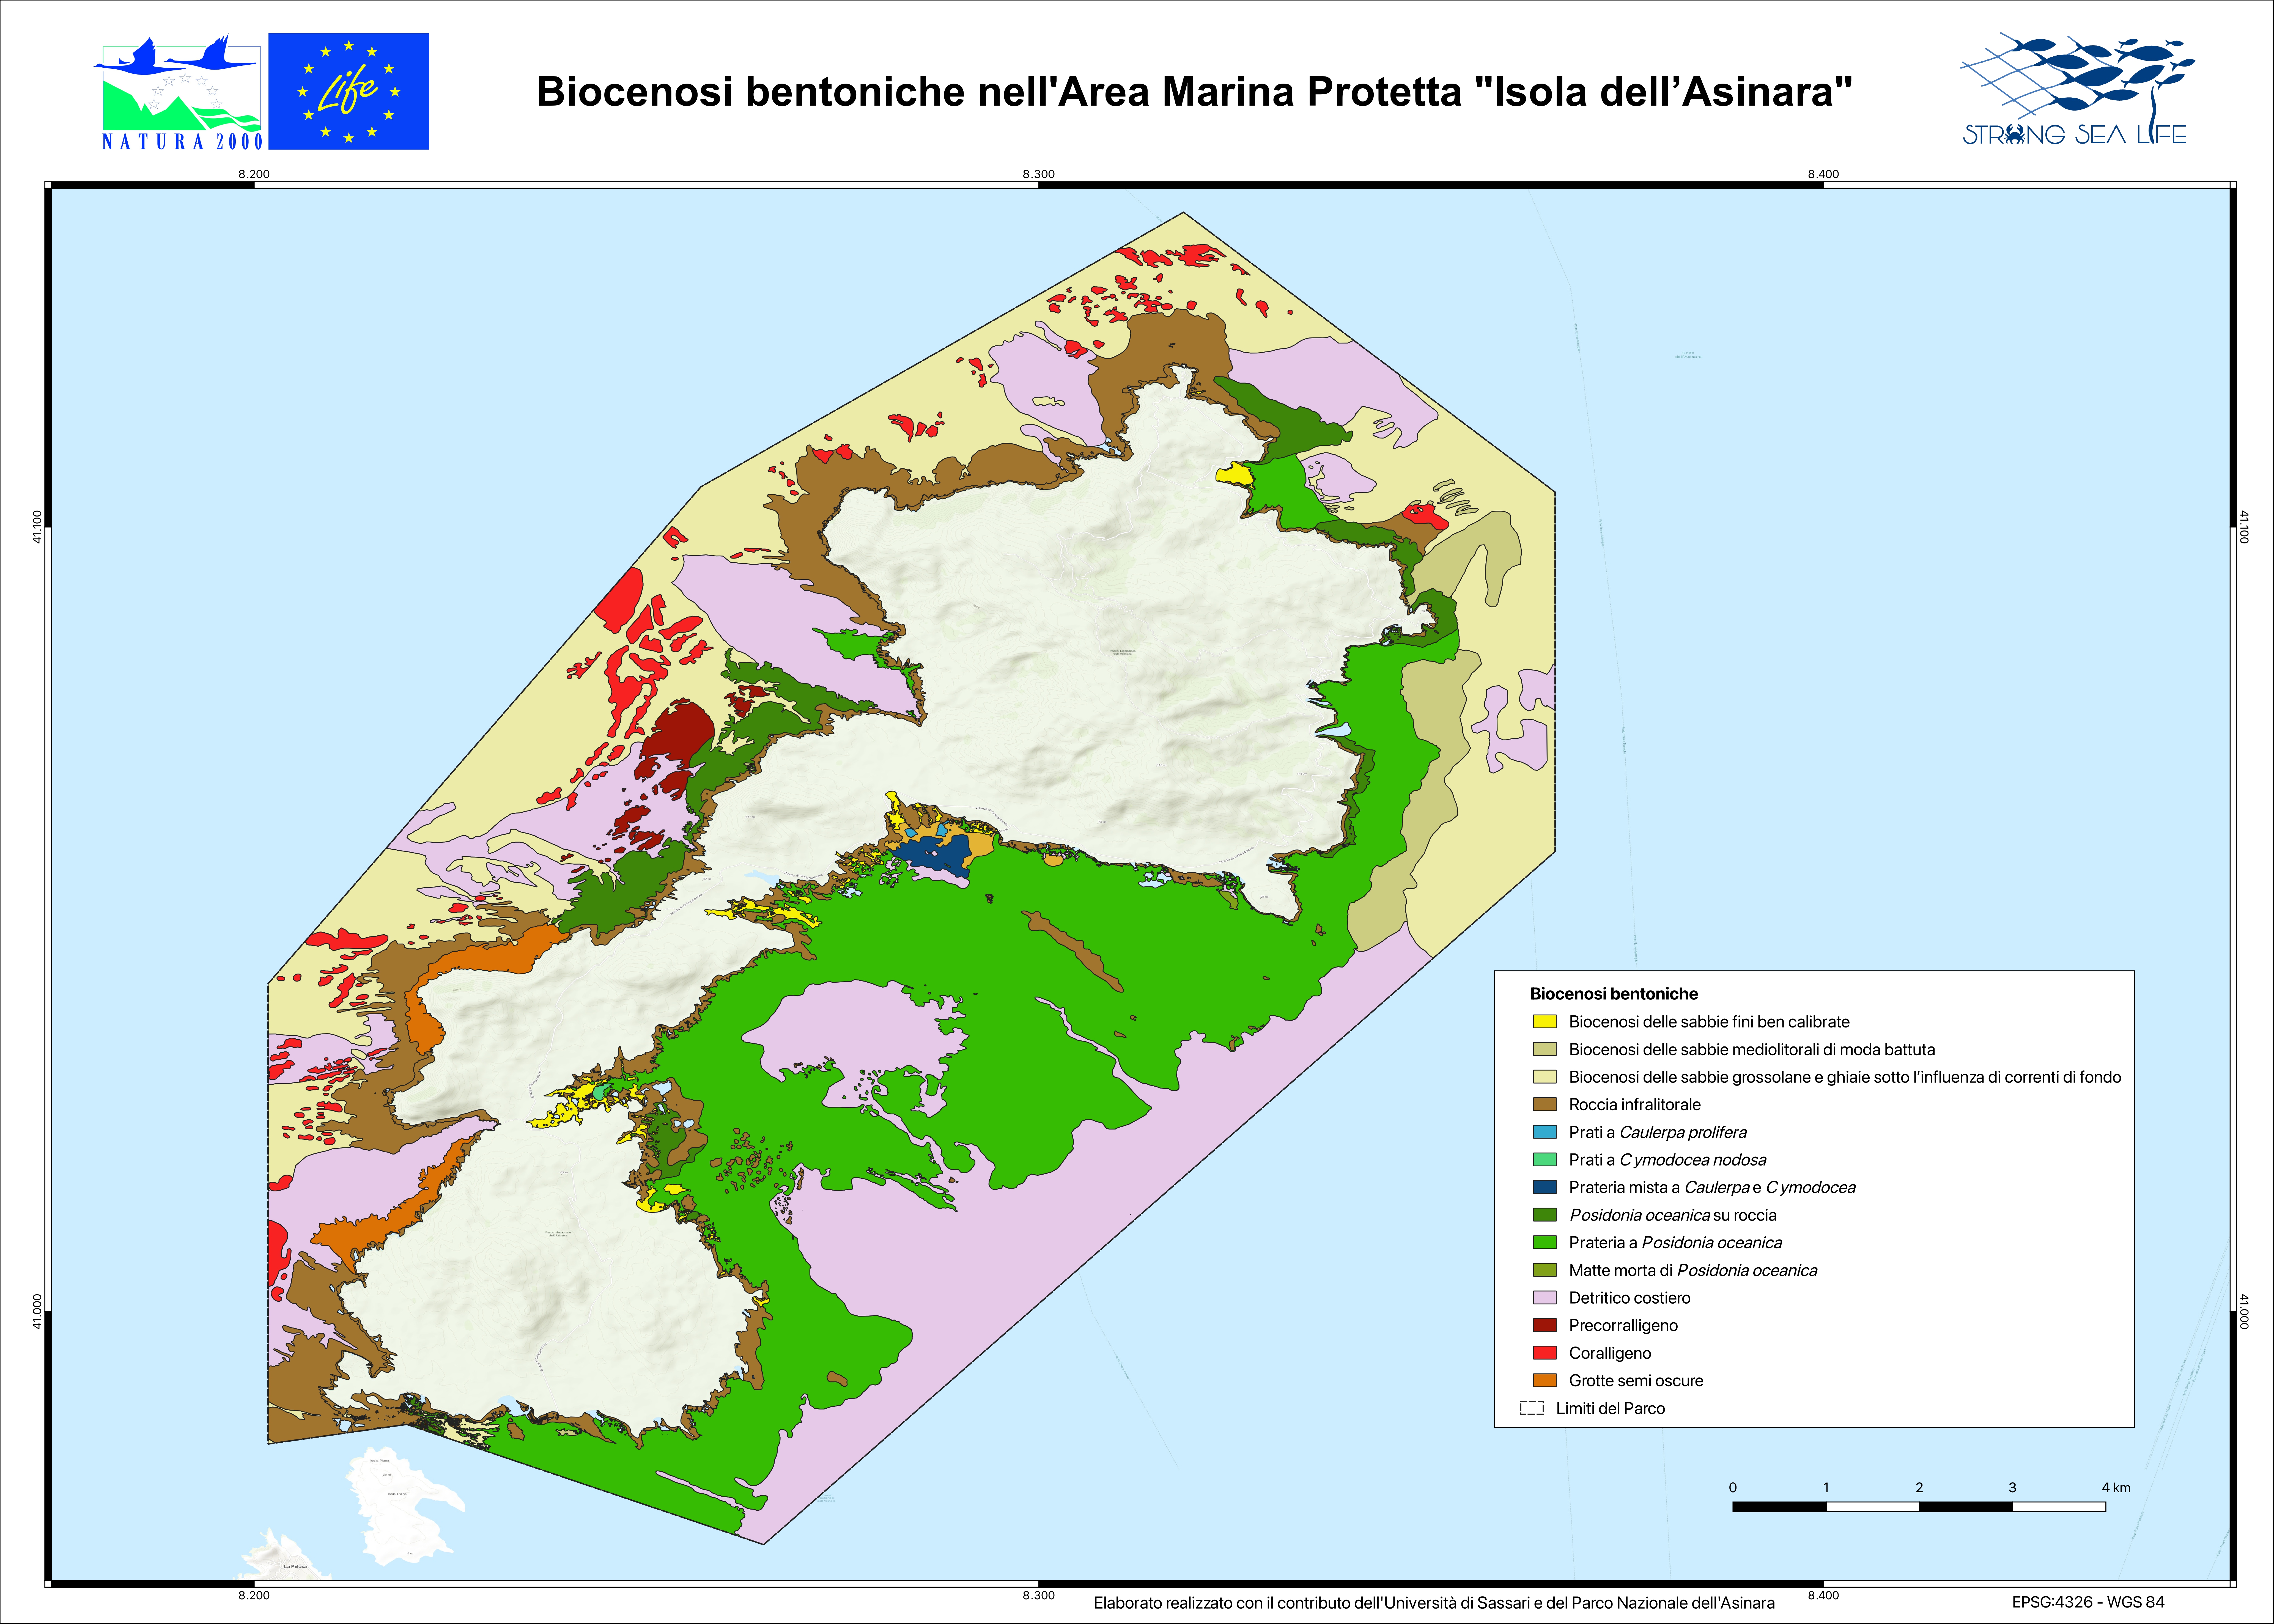 Biocenosi bentoniche nell'Area Marina Protetta "Isola dell’Asinara"